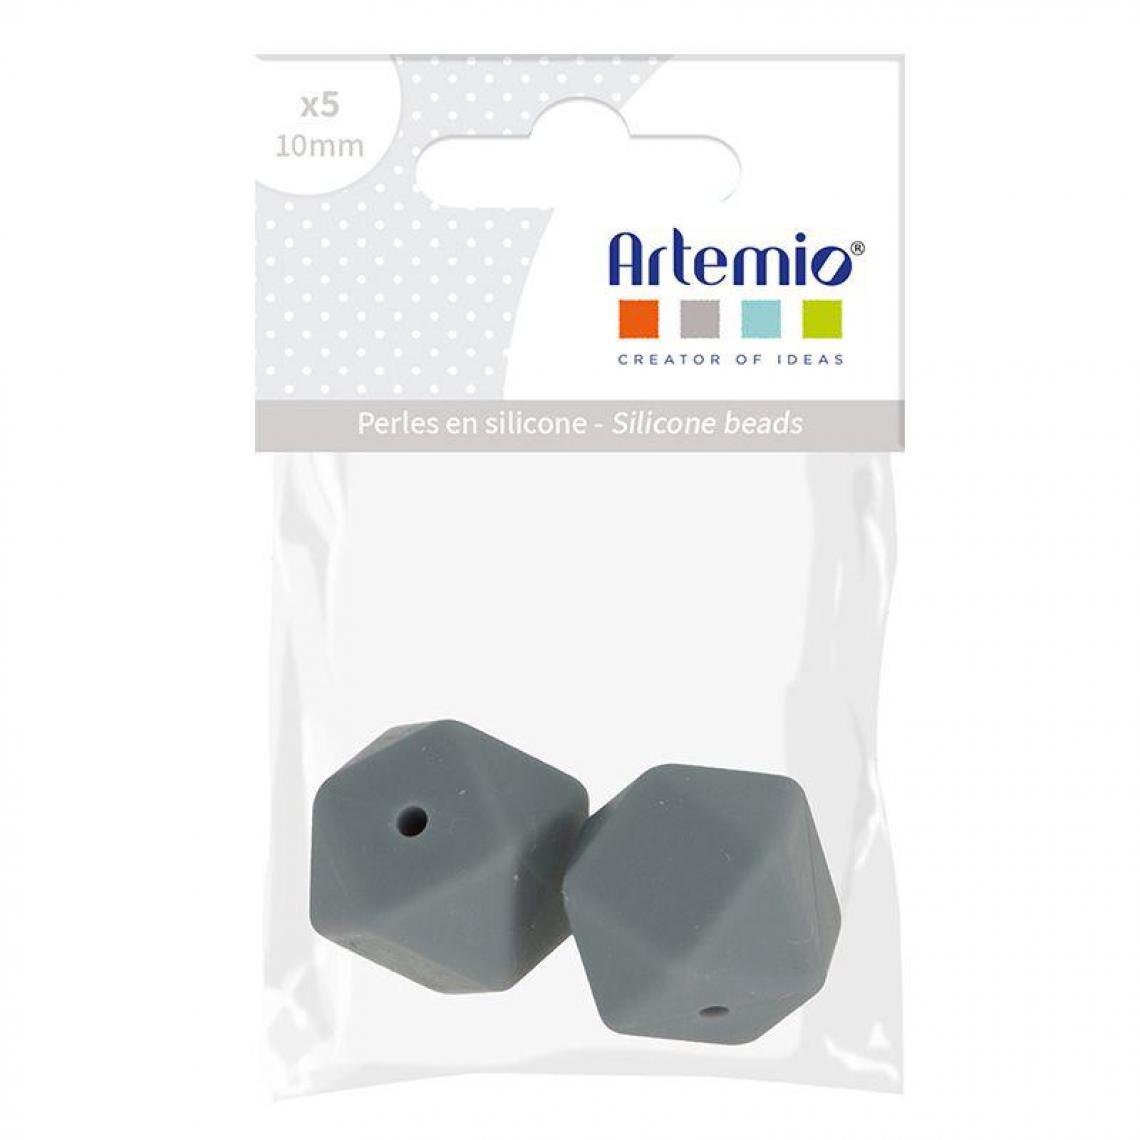 Artemio - 2 perles silicone hexagonales - 17 mm - gris - Perles